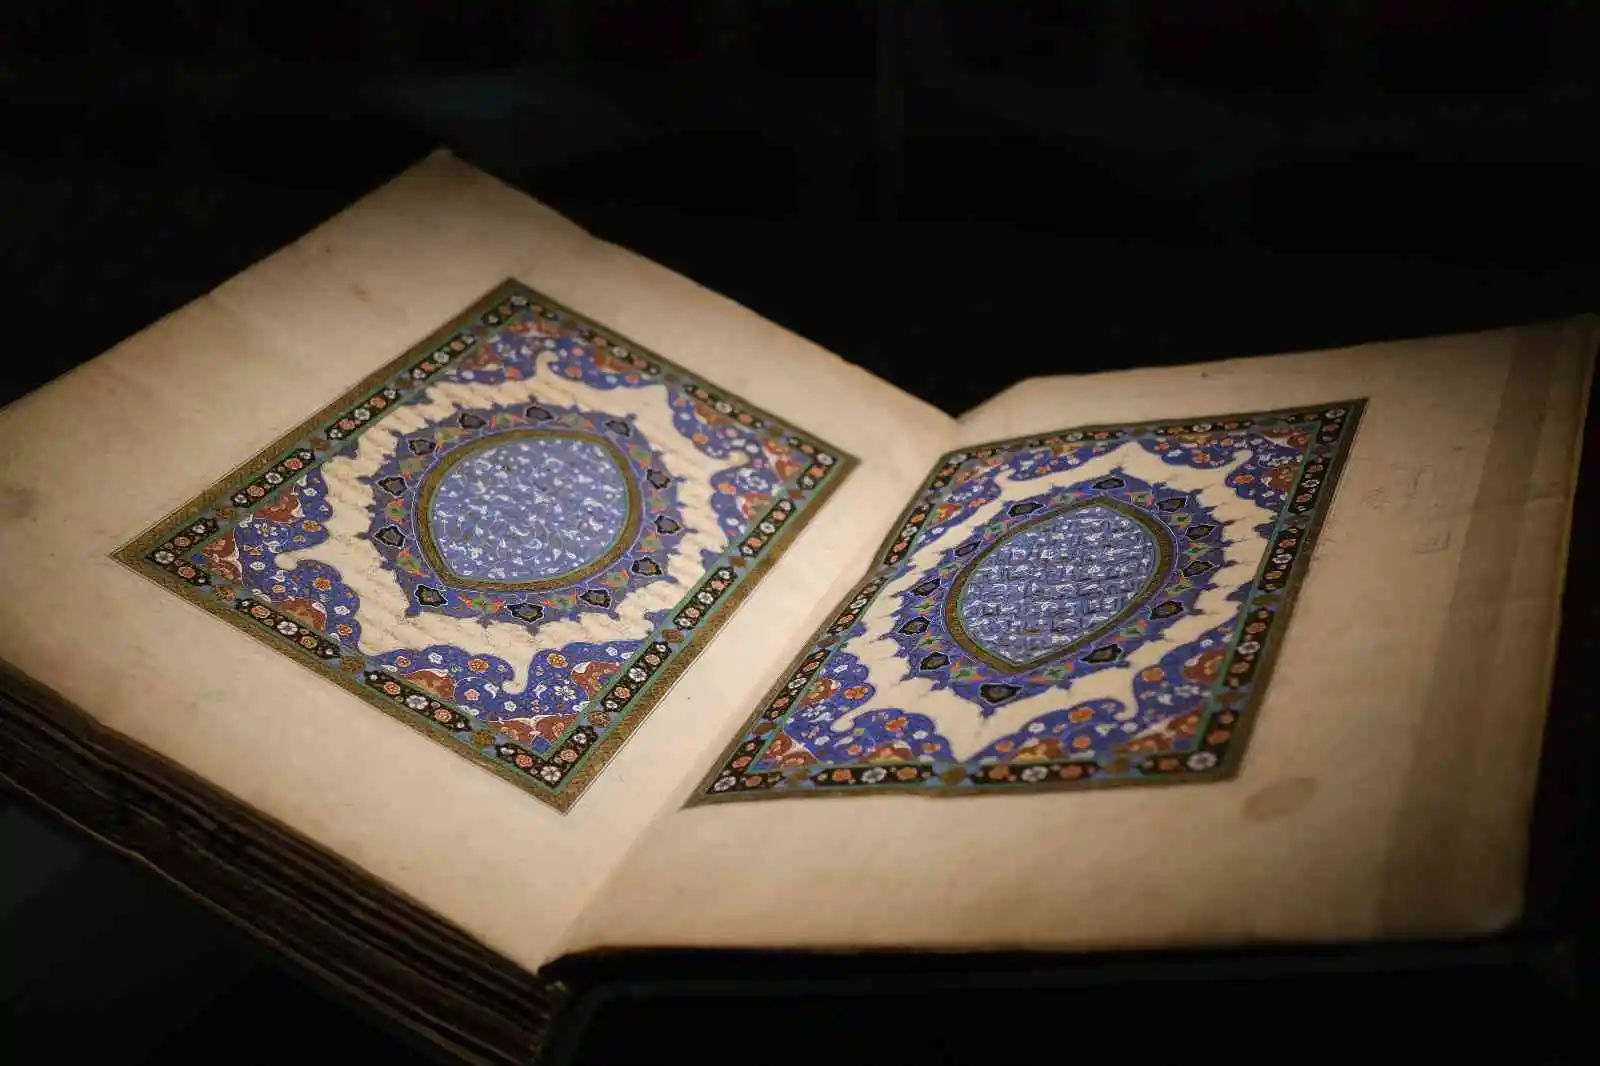 Rami Kütüphanesi’ndeki ilk sergi, Fatih Sultan Mehmet’le ilgili oldu
